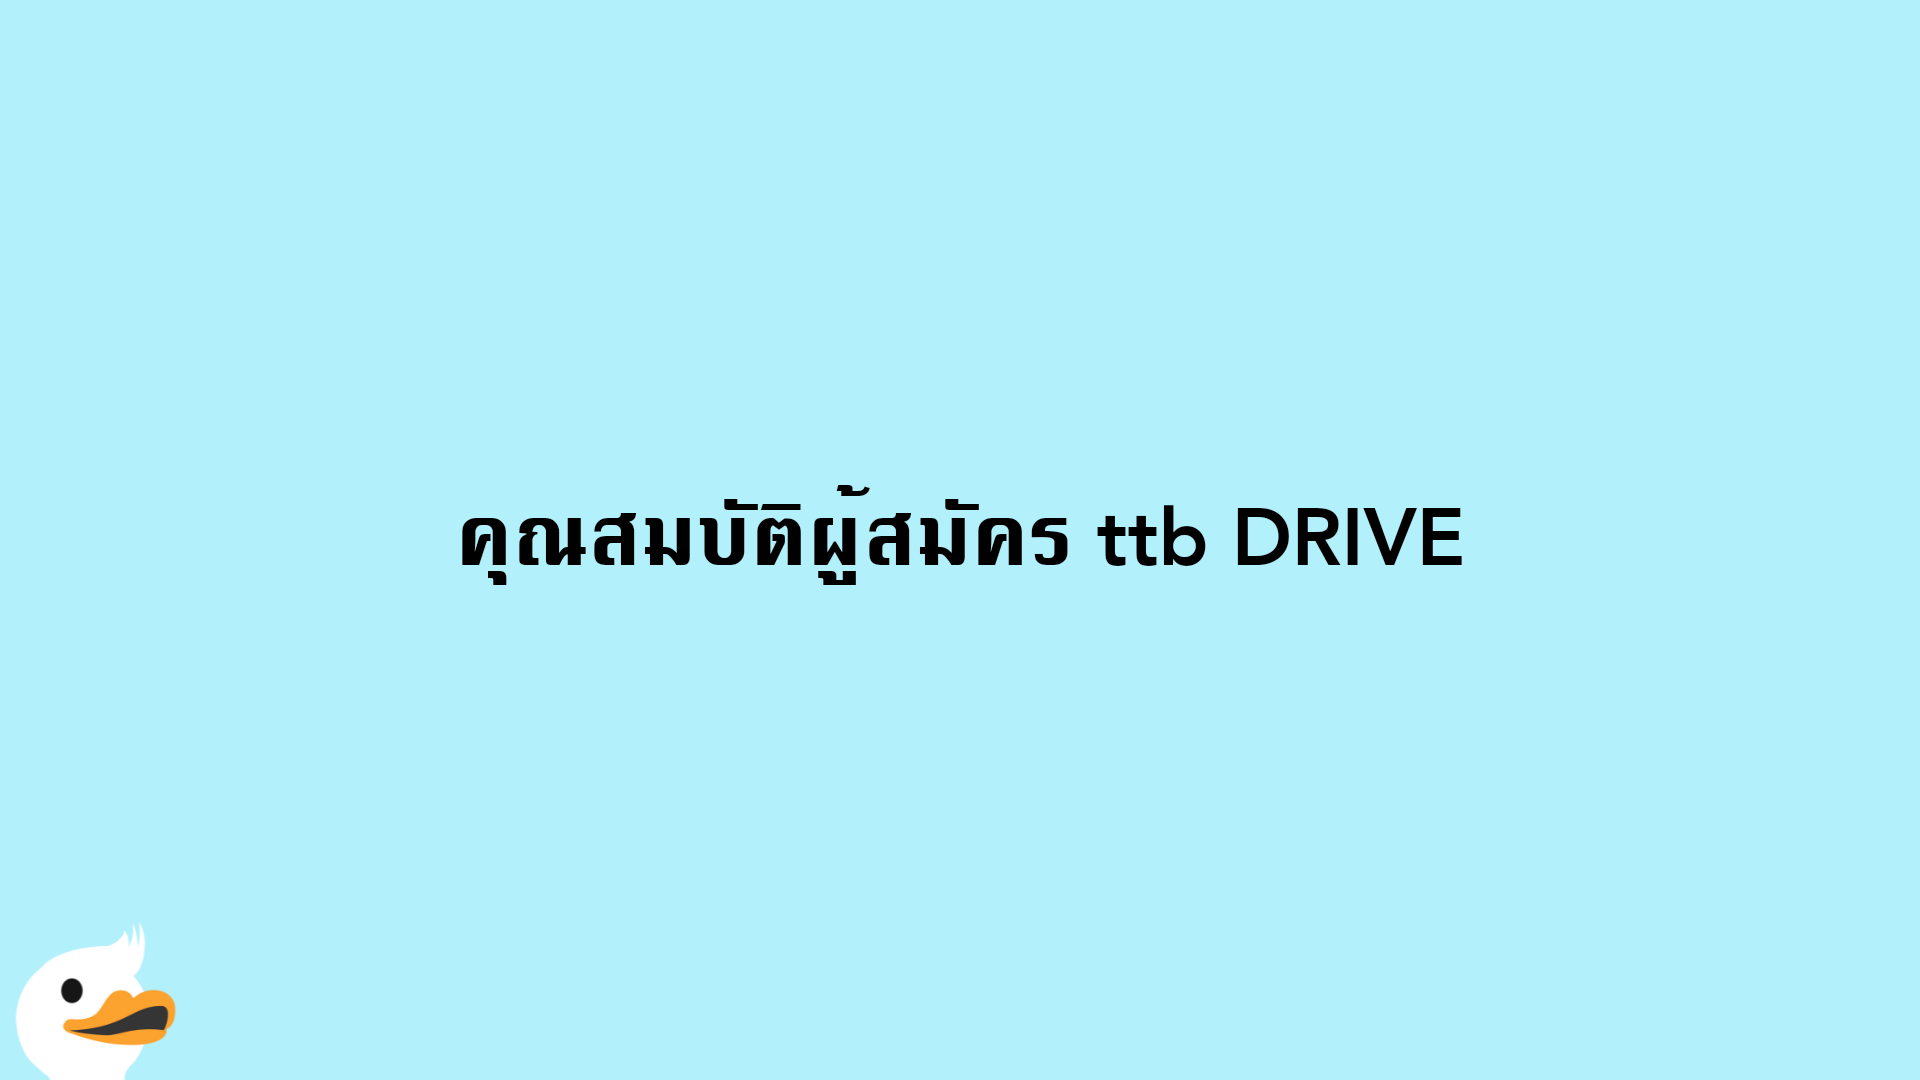 คุณสมบัติผู้สมัคร ttb DRIVE